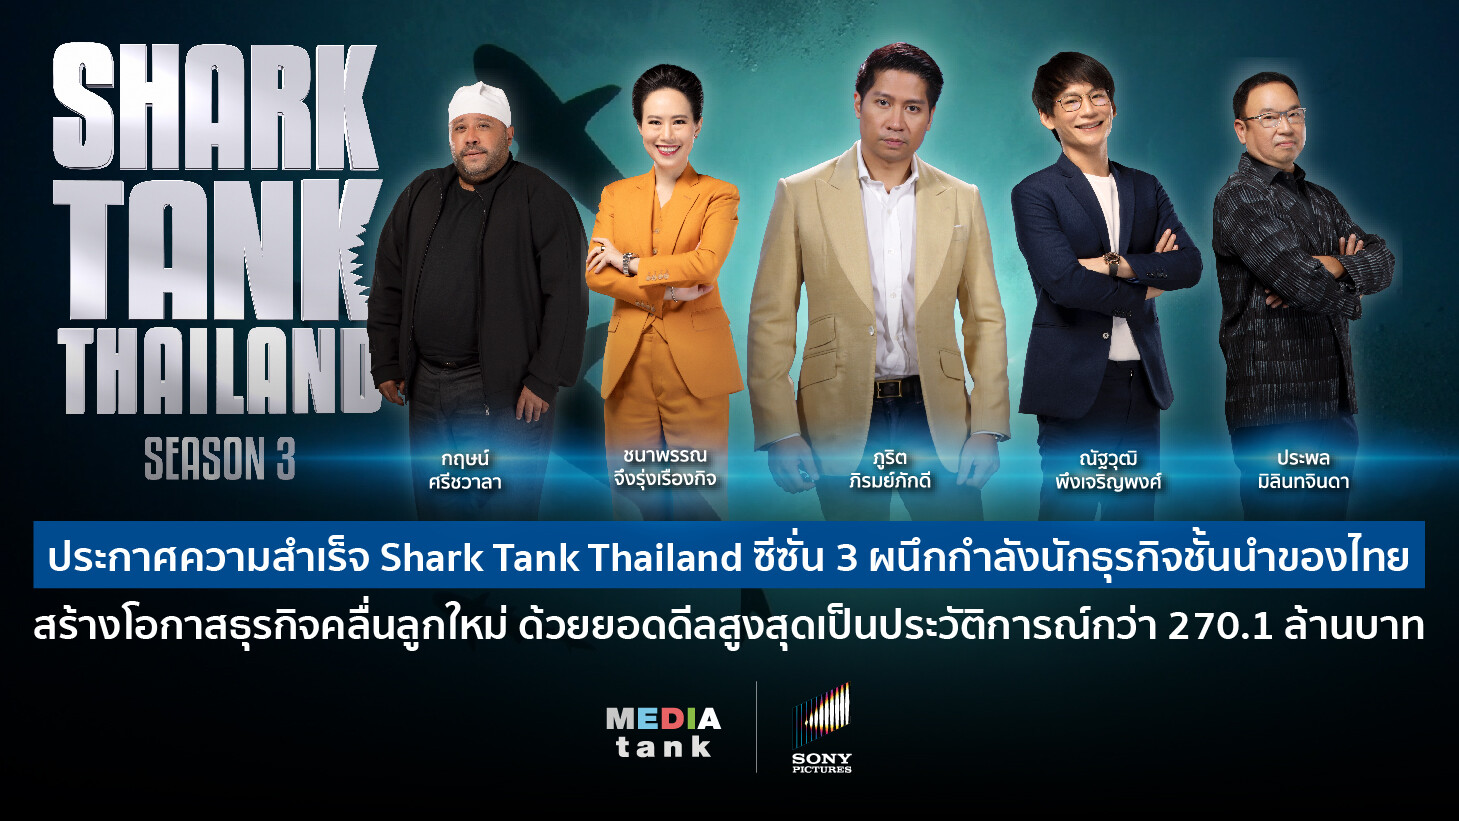 ประกาศความสำเร็จ Shark Tank Thailand ซีซั่น 3 ผนึกกำลังนักธุรกิจชั้นนำของไทย สร้างโอกาสธุรกิจคลื่นลูกใหม่ ด้วยยอดดีลสูงสุดเป็นประวัติการณ์กว่า 270.1 ล้านบาท